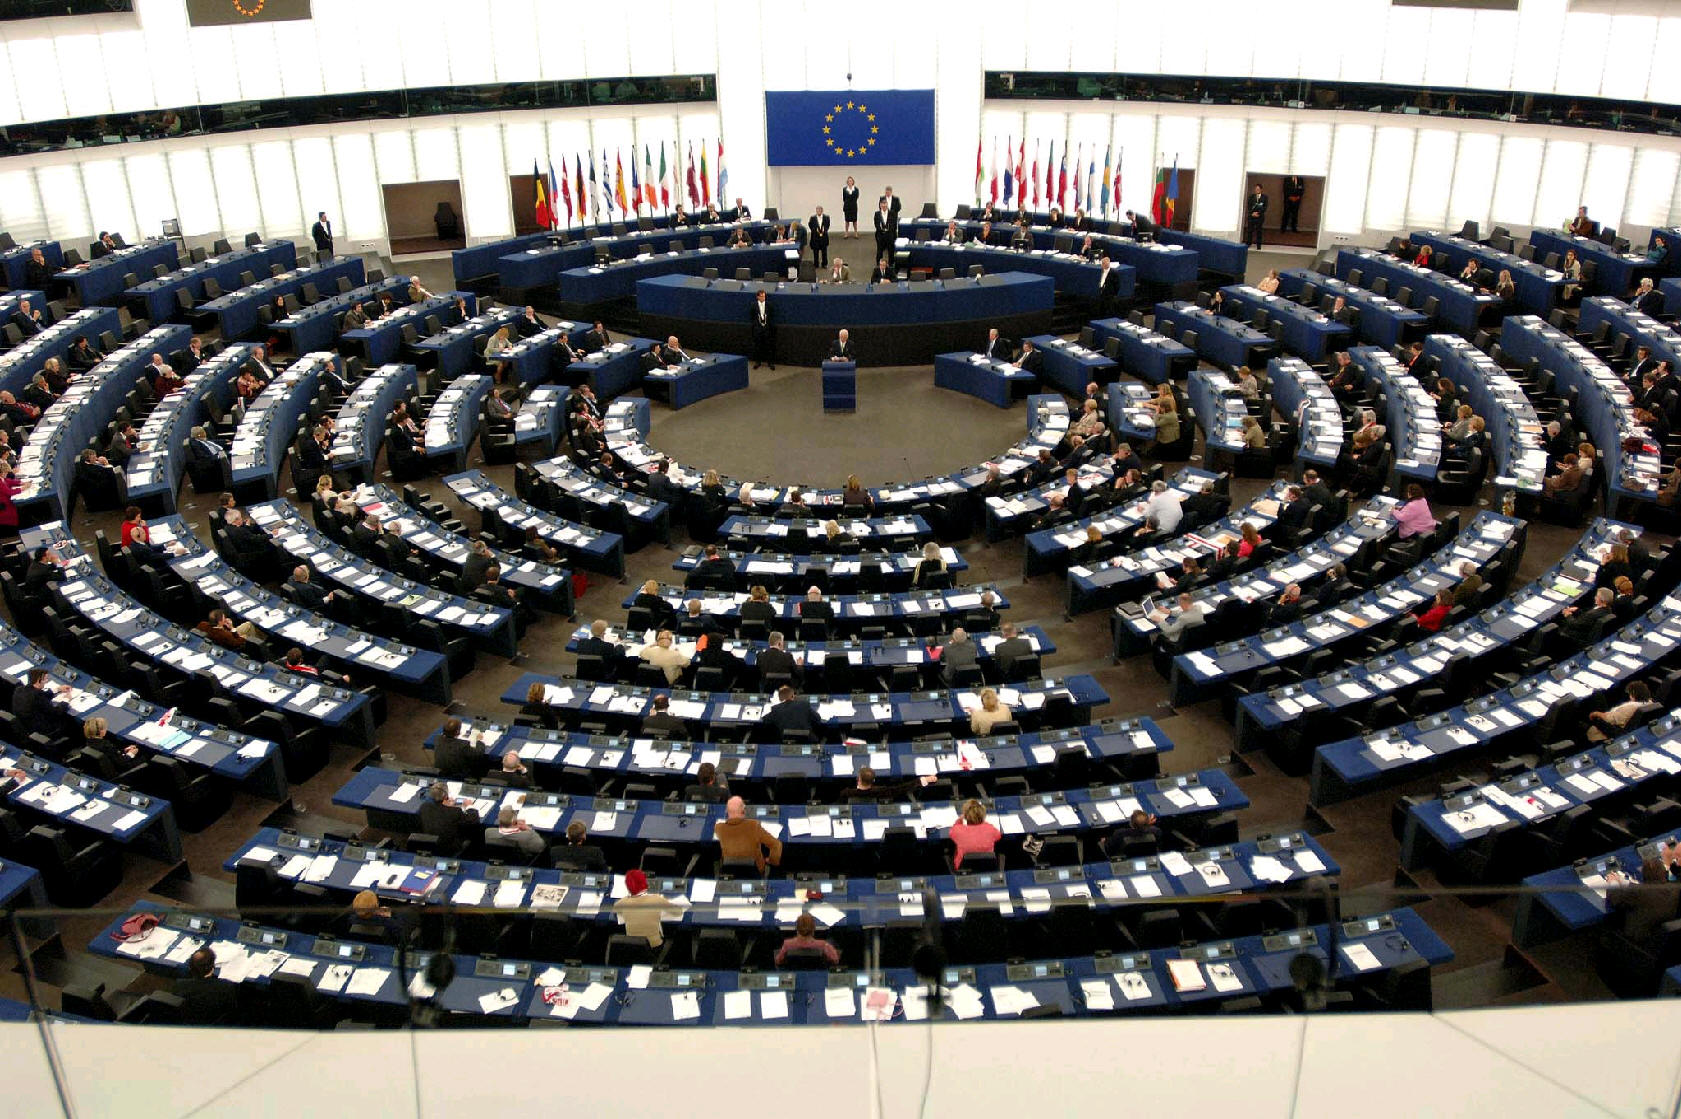 “Νίκη” στο Ευρωκοινοβούλιο για τις γερμανικές αποζημιώσεις